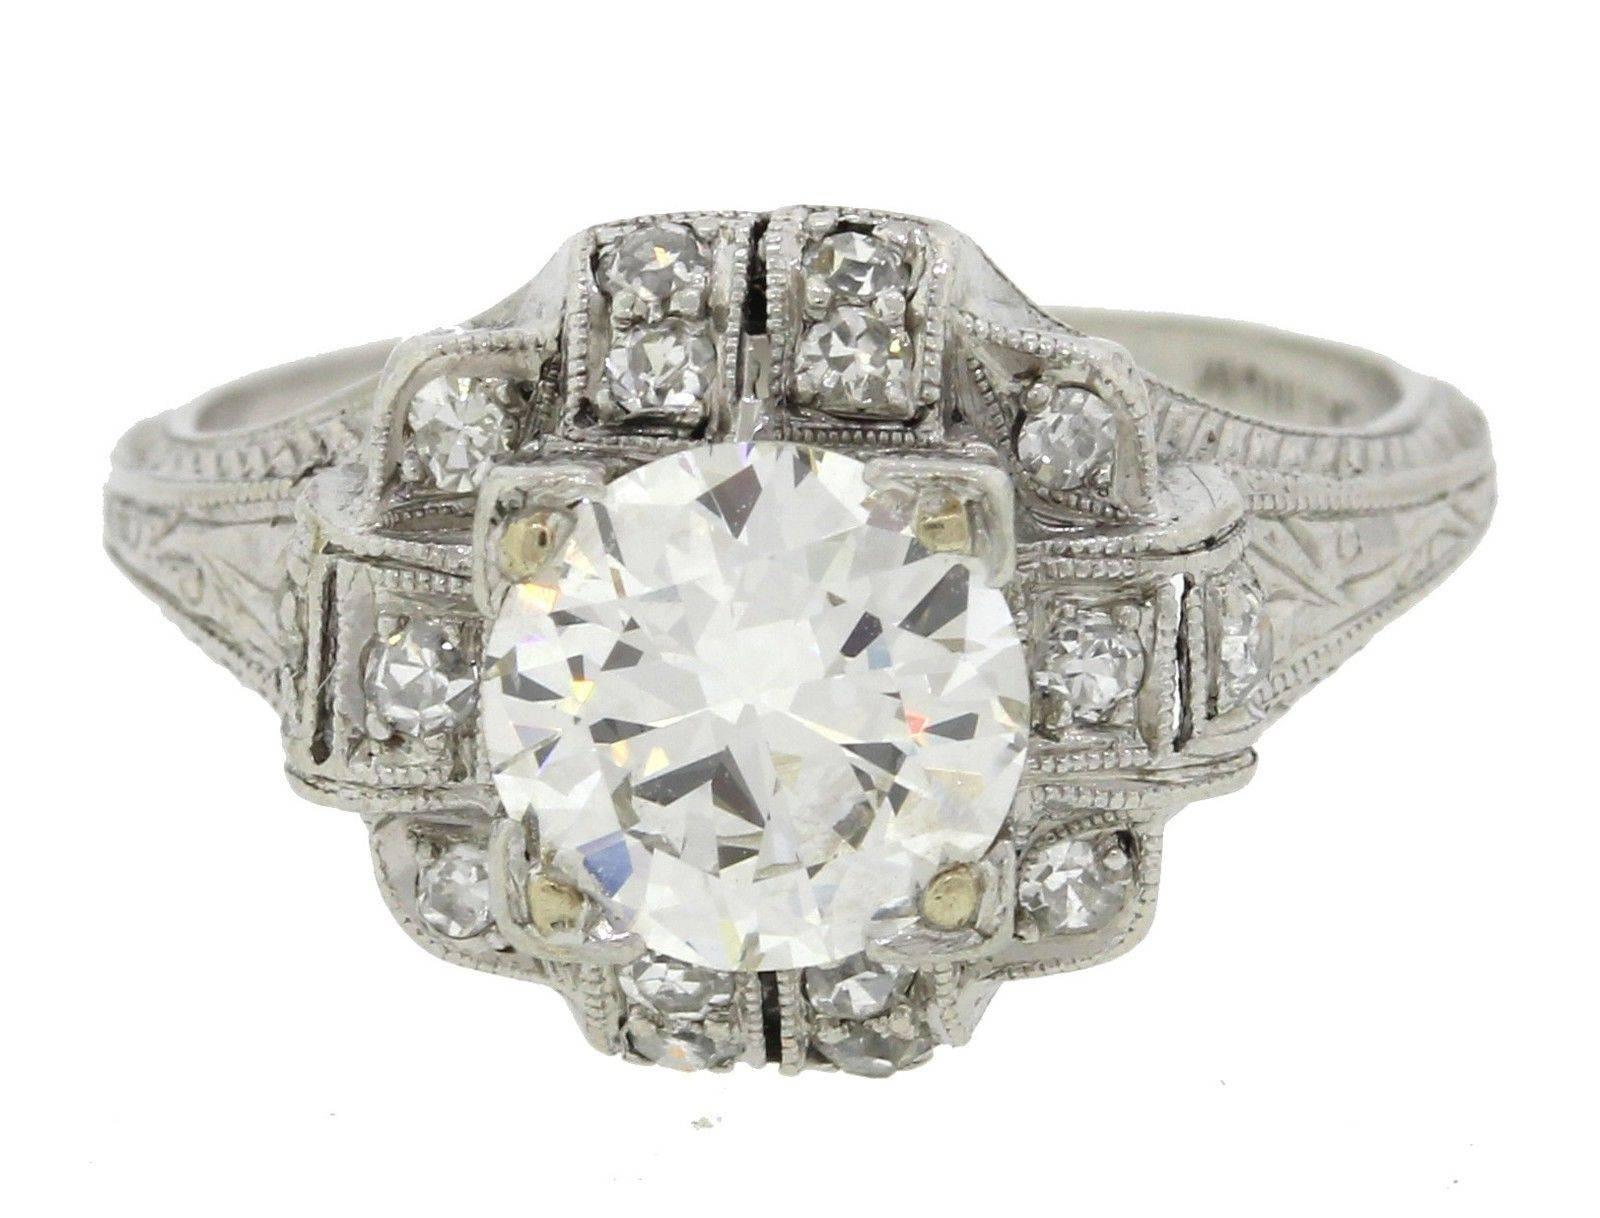 Exquisite Antique Art Deco 1.62 Carat Diamonds Platinum Engagement Ring For Sale 2